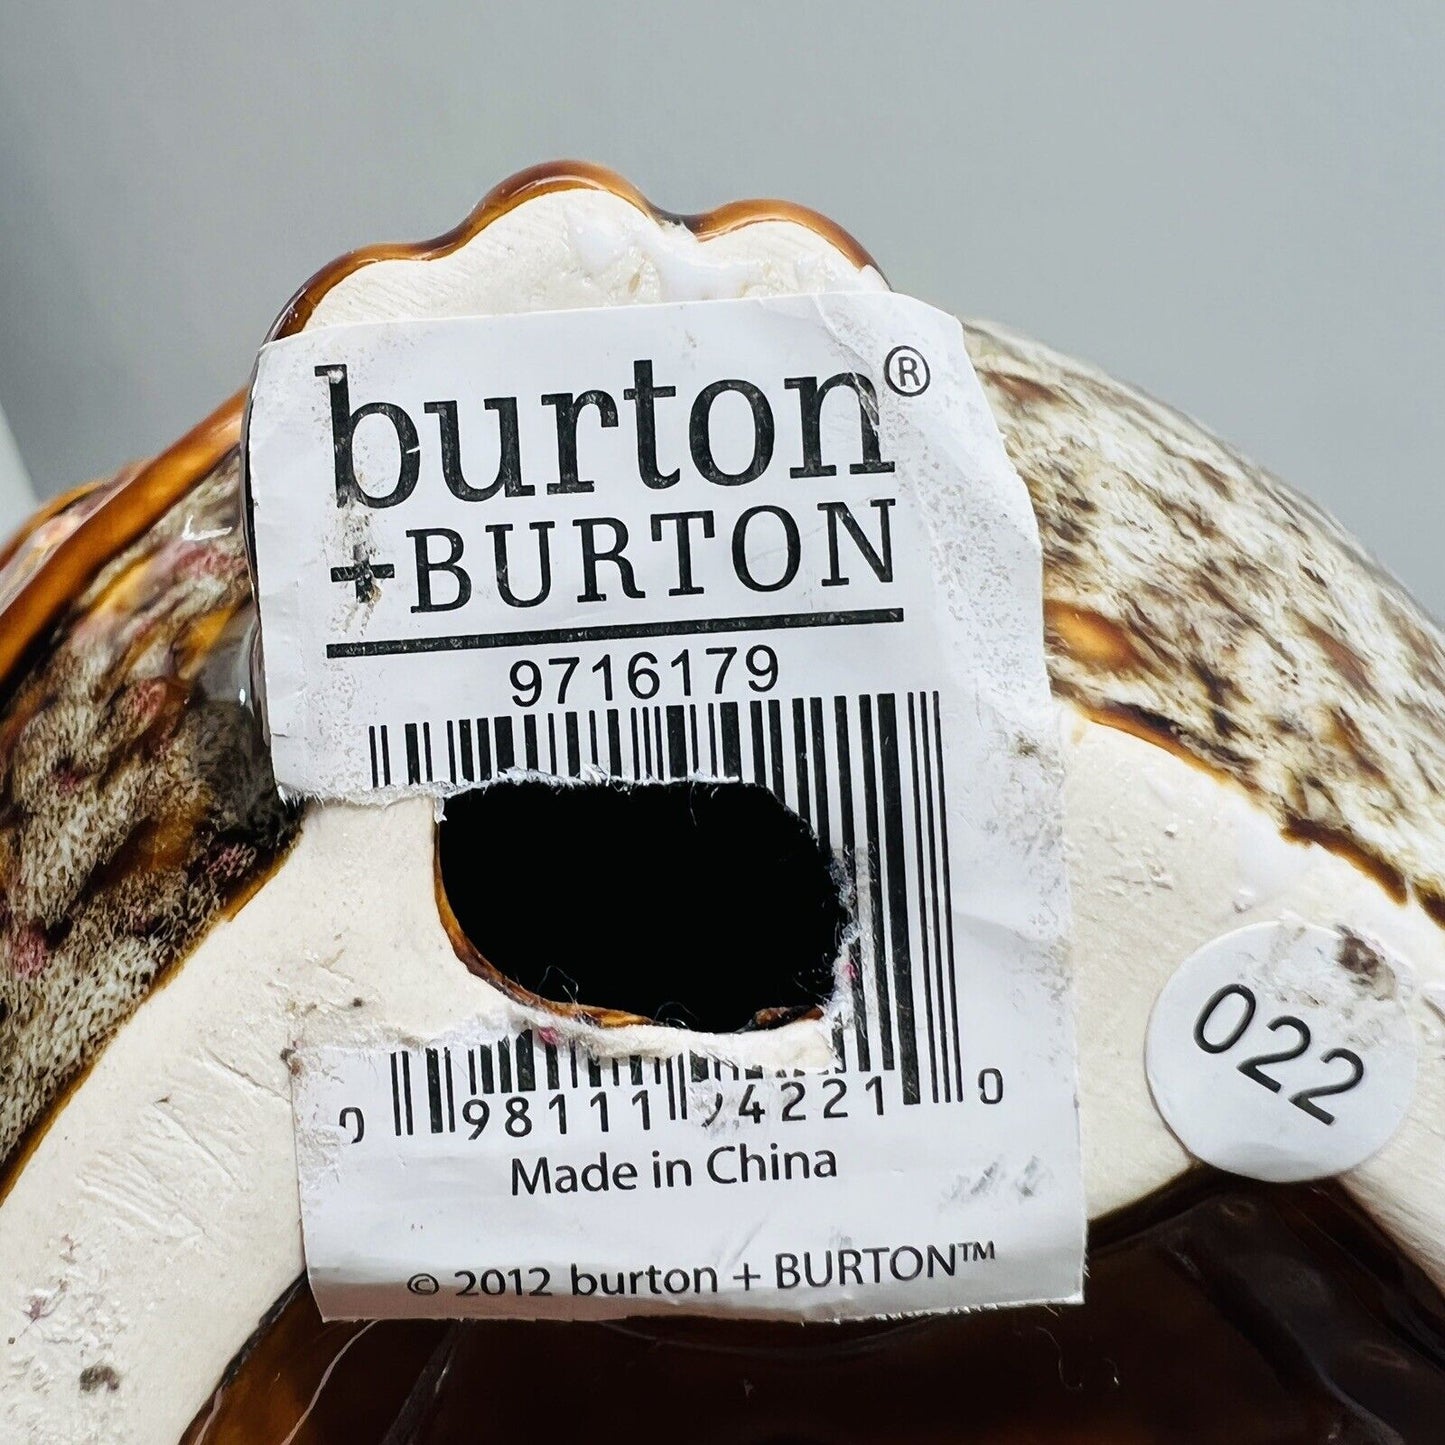 Burton and Burton Owl Pottery Ceramic Figurine Sculpture 2012 Home Decor